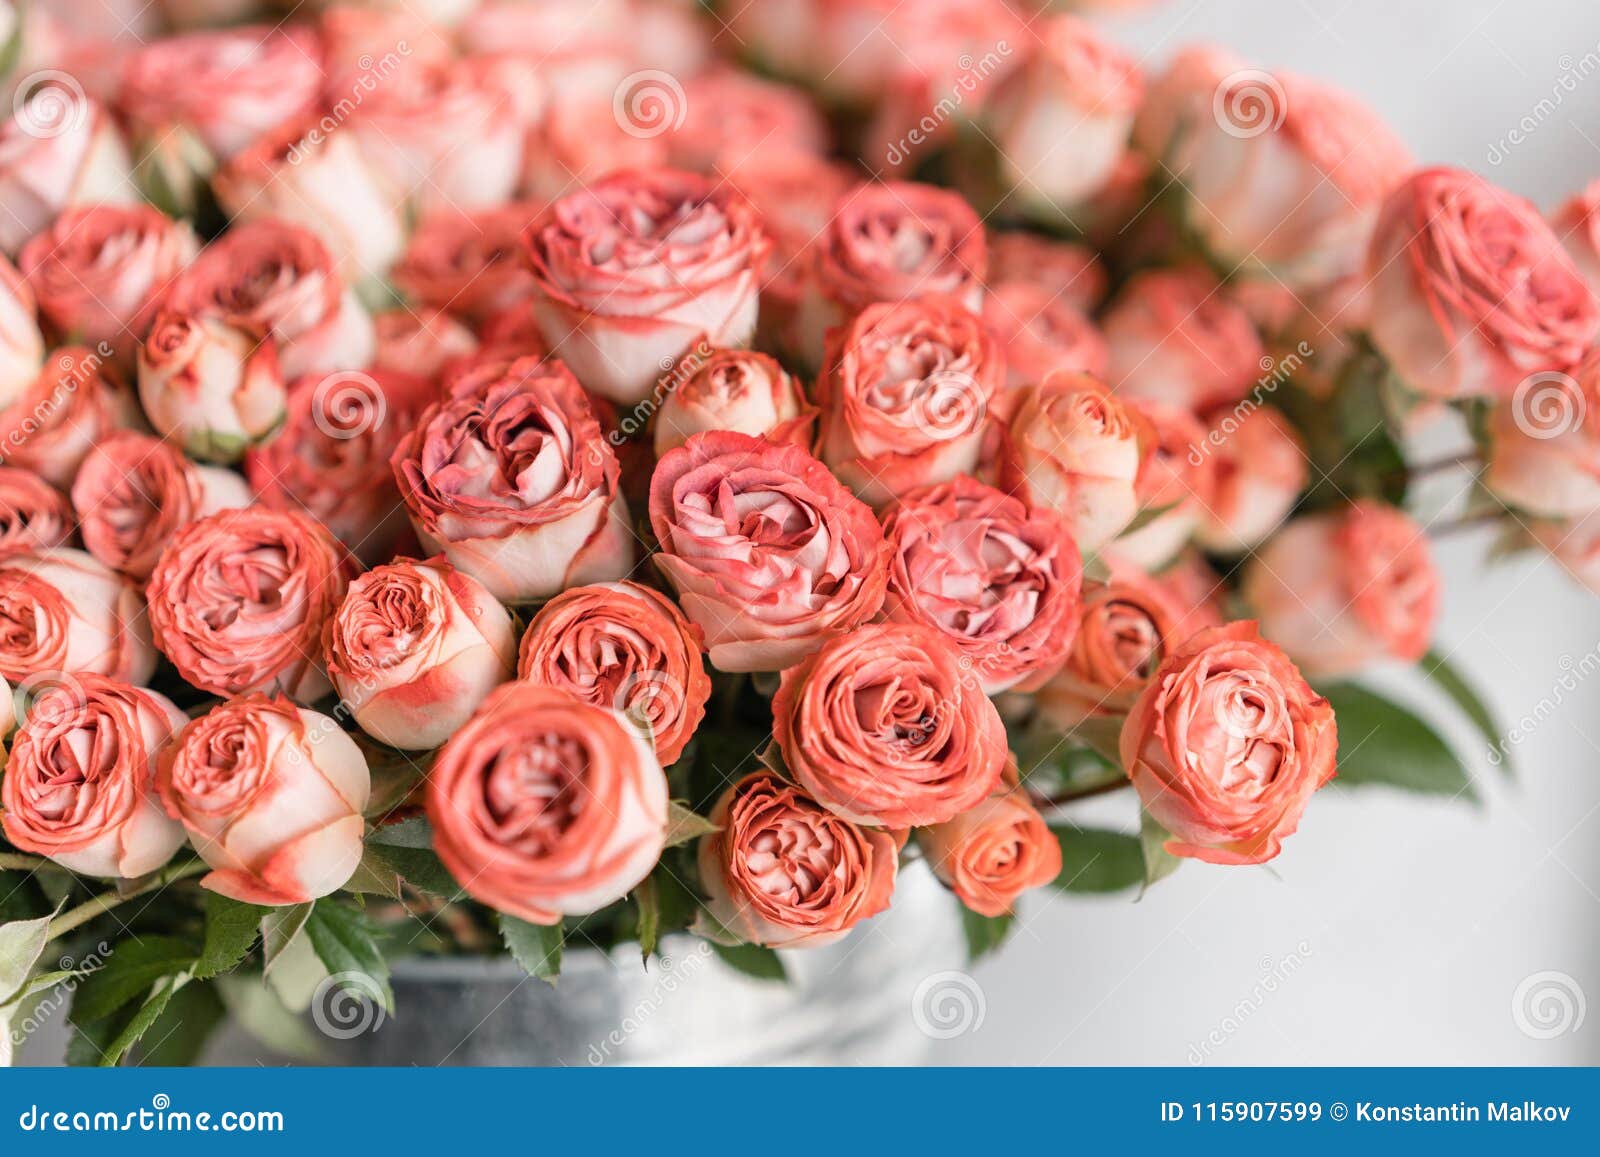 Roses De Rose Multicolore Et En Pastel Et De Couleur Pulvérulente E  Contexte Naturel Floral Concept De Fleuriste Image stock - Image du  hollande, matin: 115907599